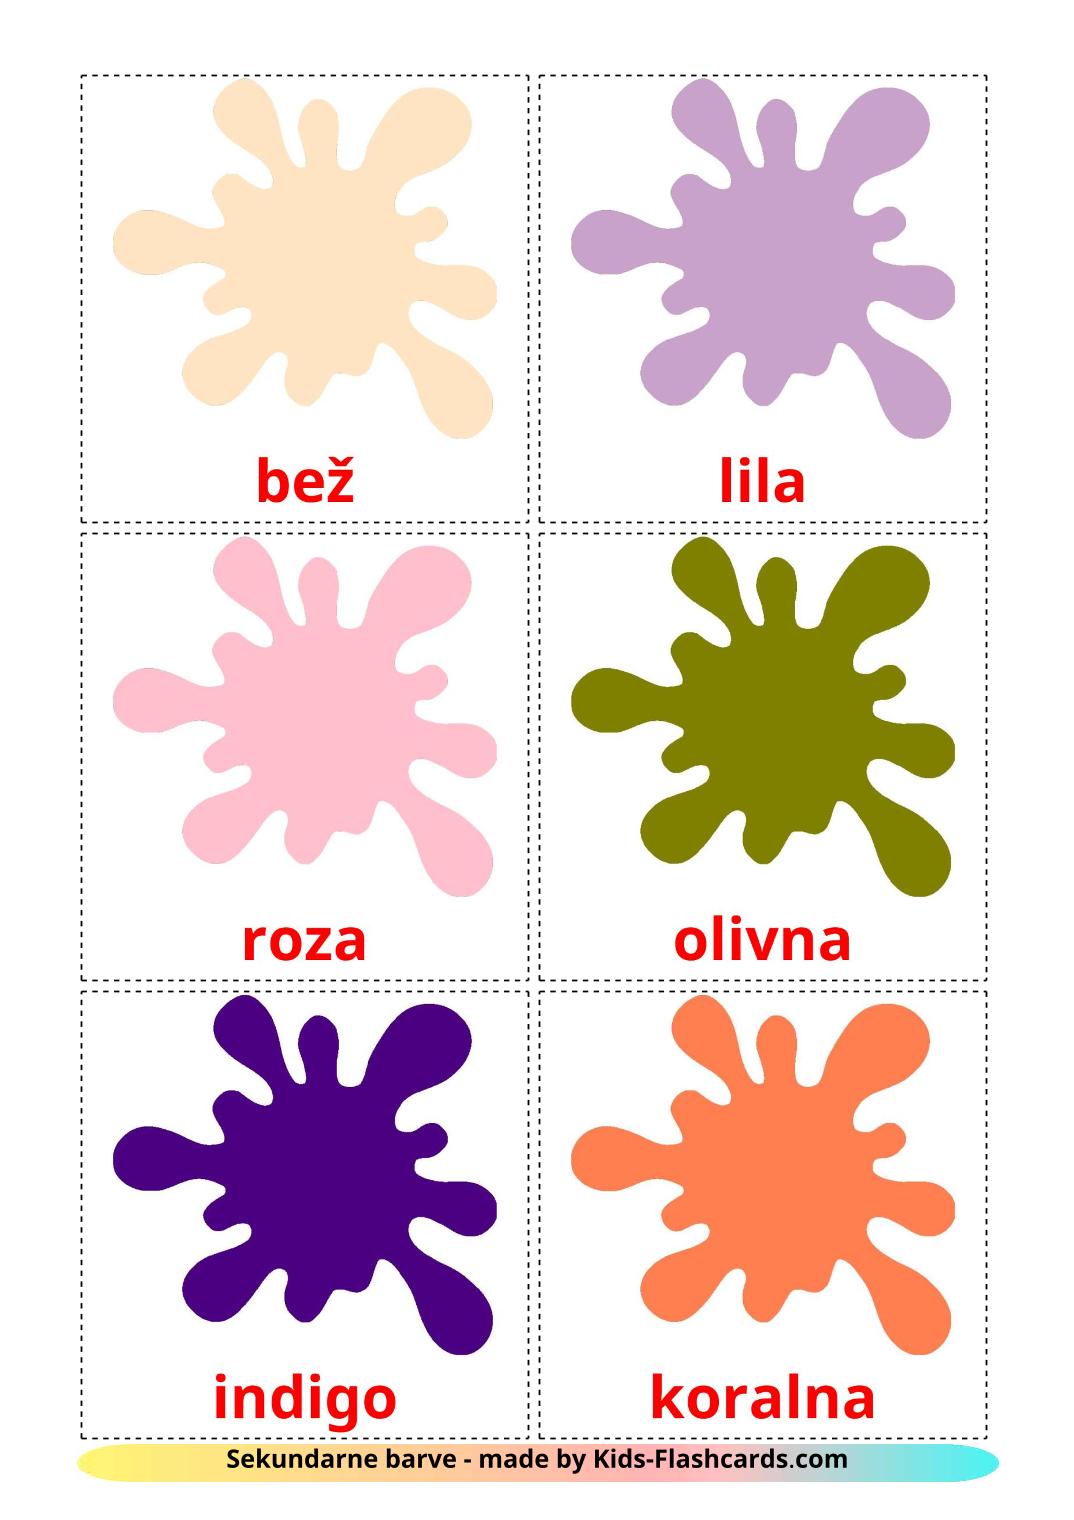 Colores secundarios - 20 fichas de esloveno para imprimir gratis 